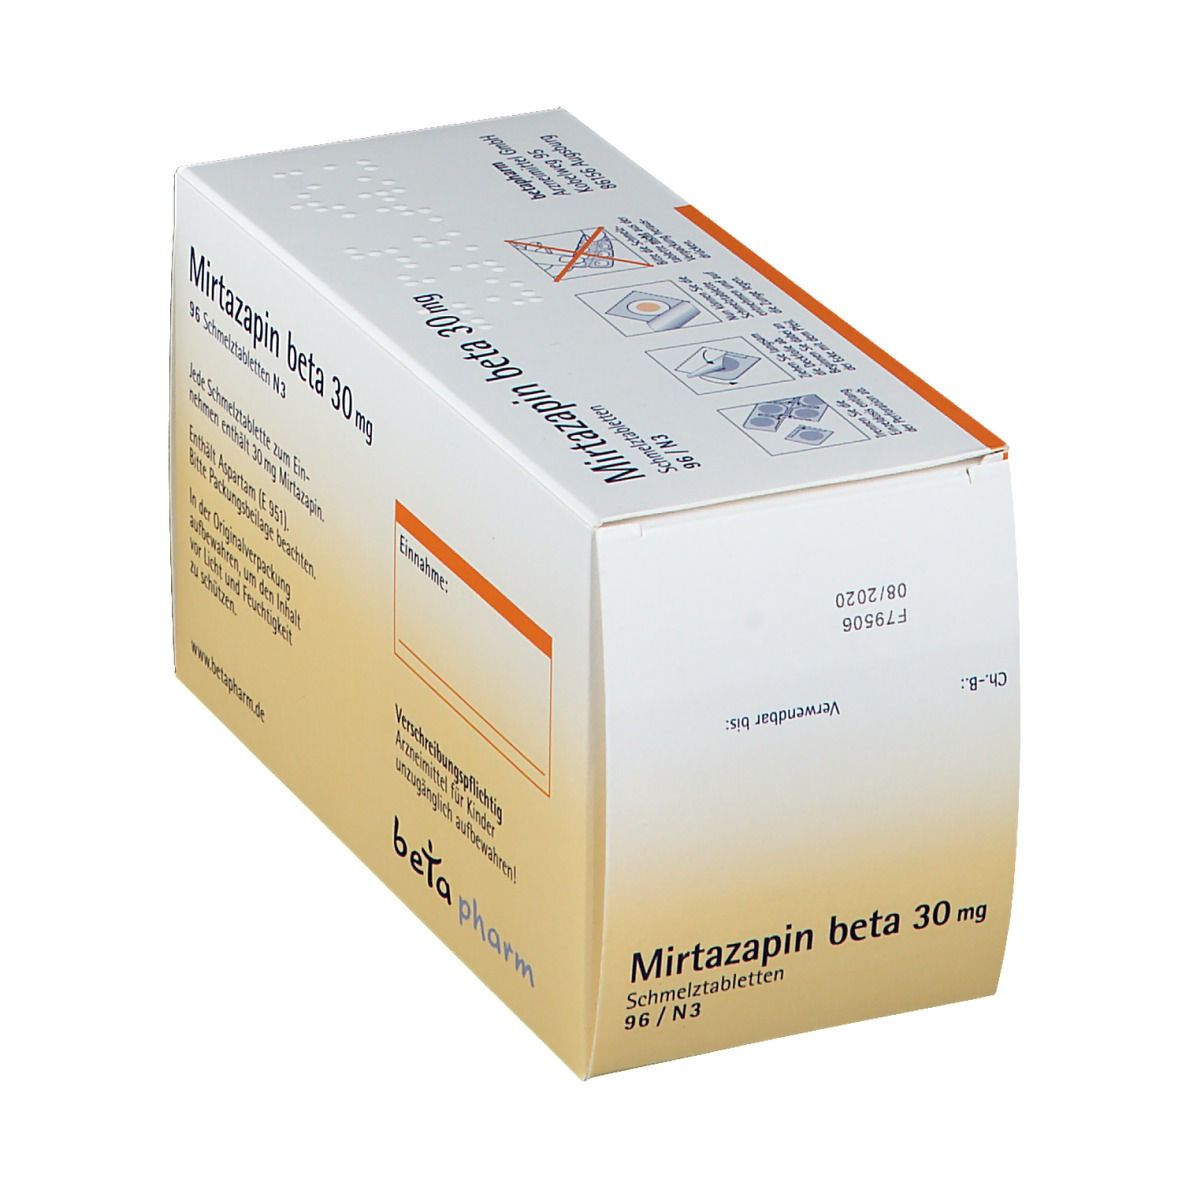 Mirtazapin beta 30 mg Schmelztabletten